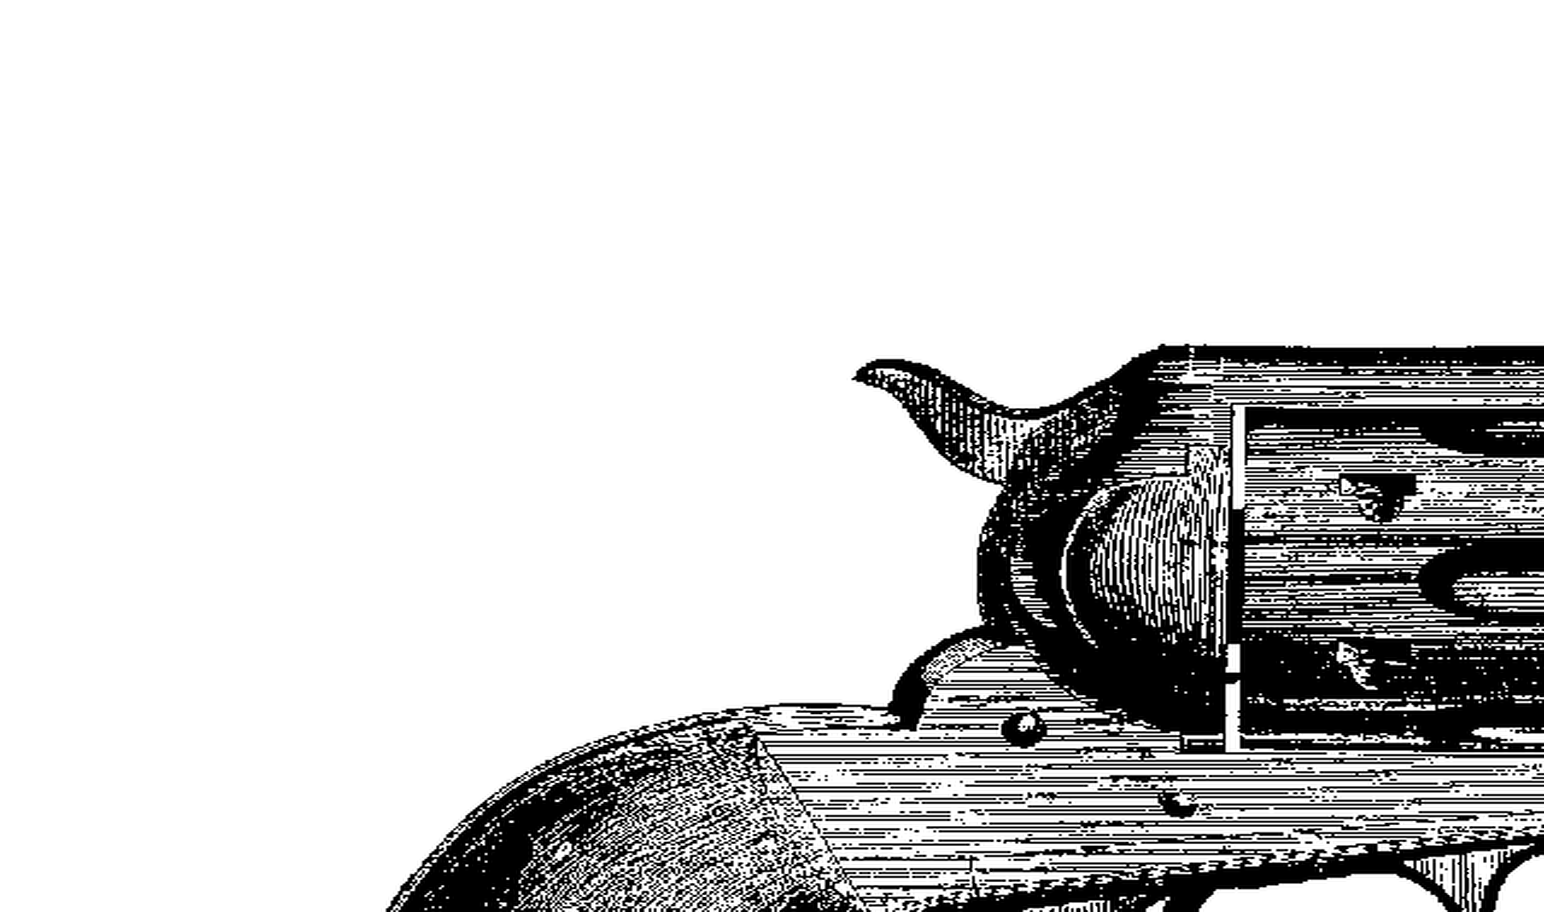 pistol clipart wild west